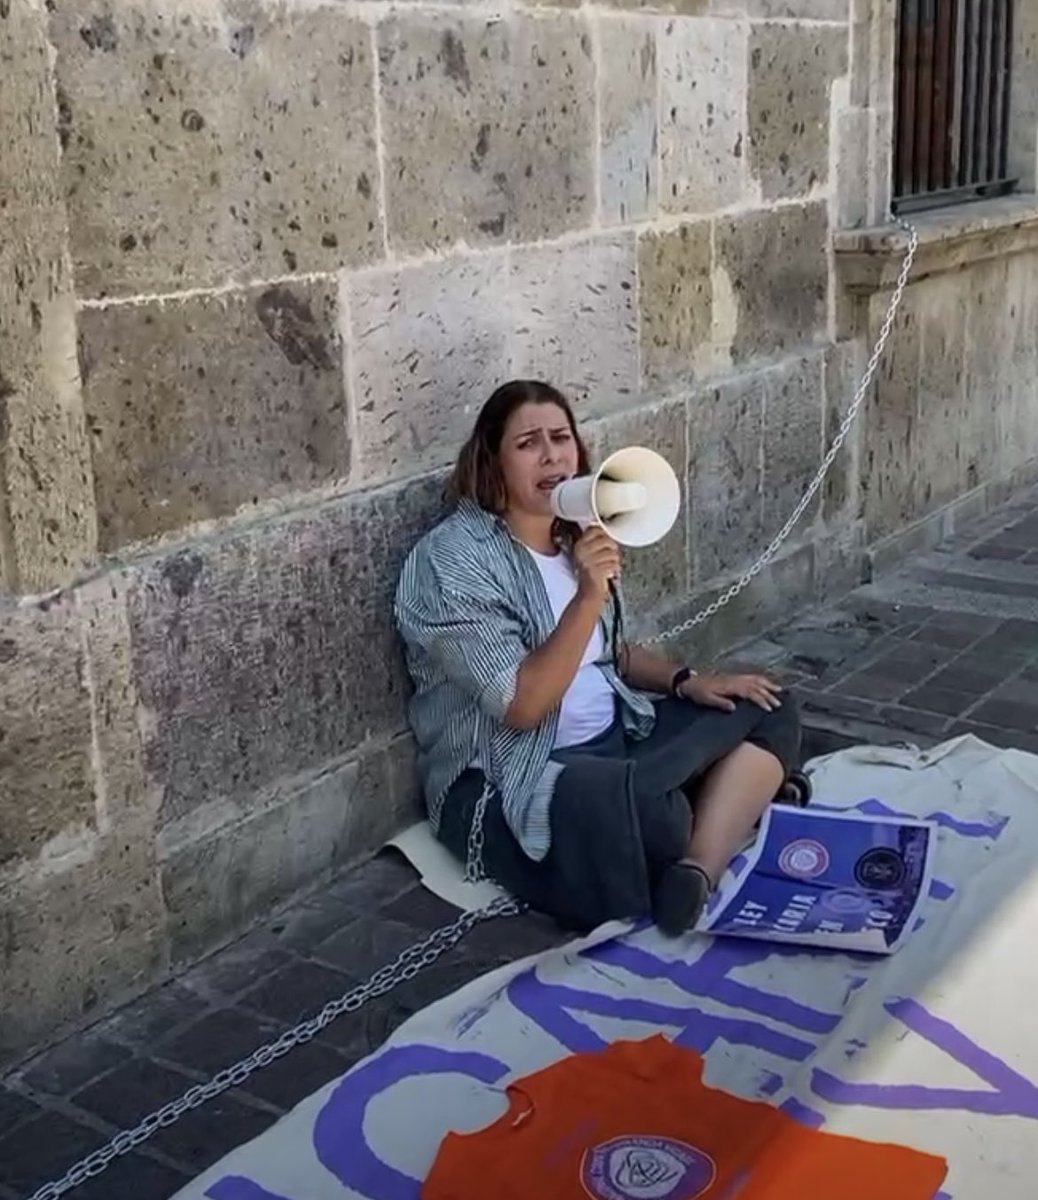 Madres que sufren Violencia Vicaria se encadenan e inician huelga de hambre en el Congreso de Jalisco por su negativa a aprobar esta ley que ya fue ratificada por @SCJN #violenciavicaria @EnriqueAlfaroR @LegislativoJal @FNCVVICARIA @NatoMandalera